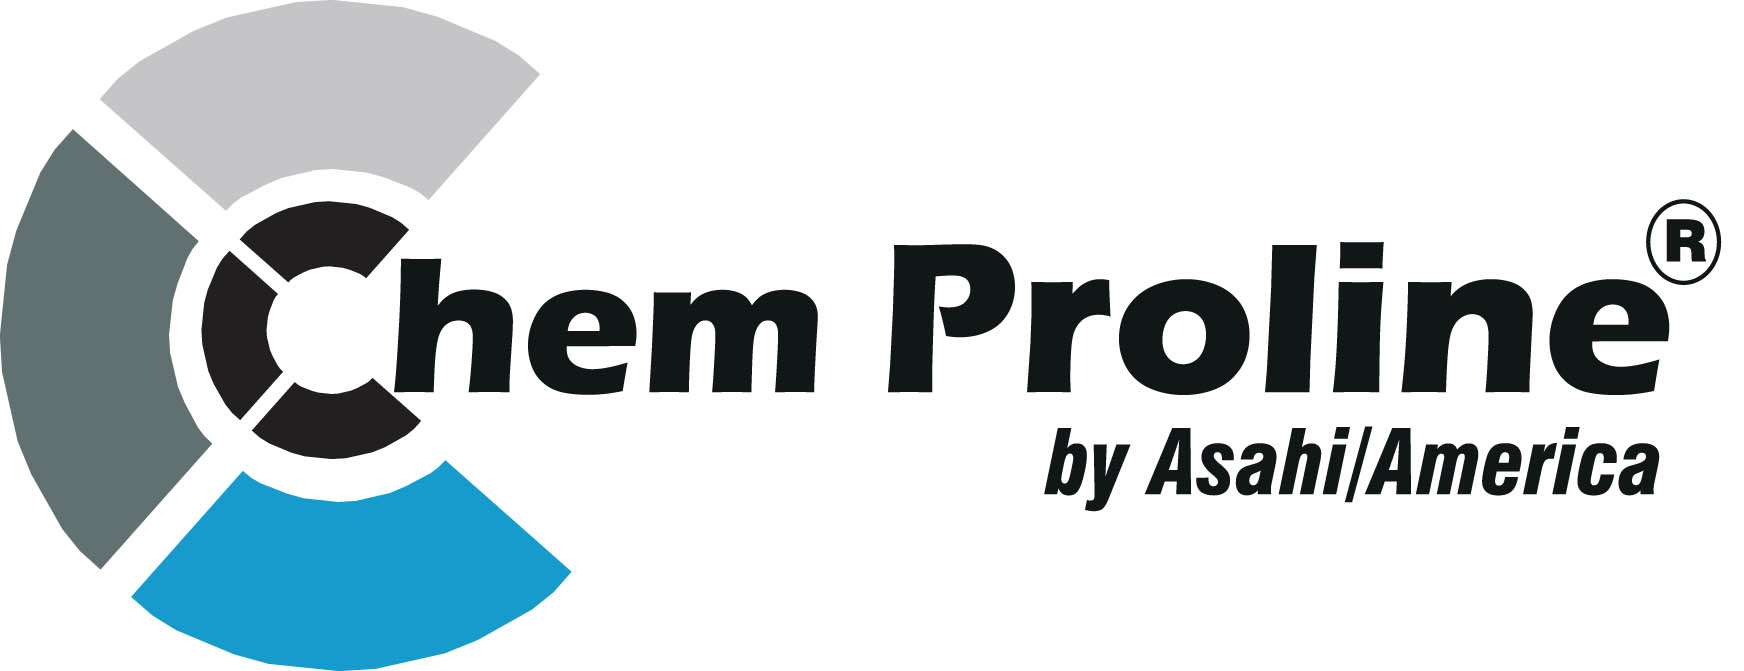 Chem Proline Logo